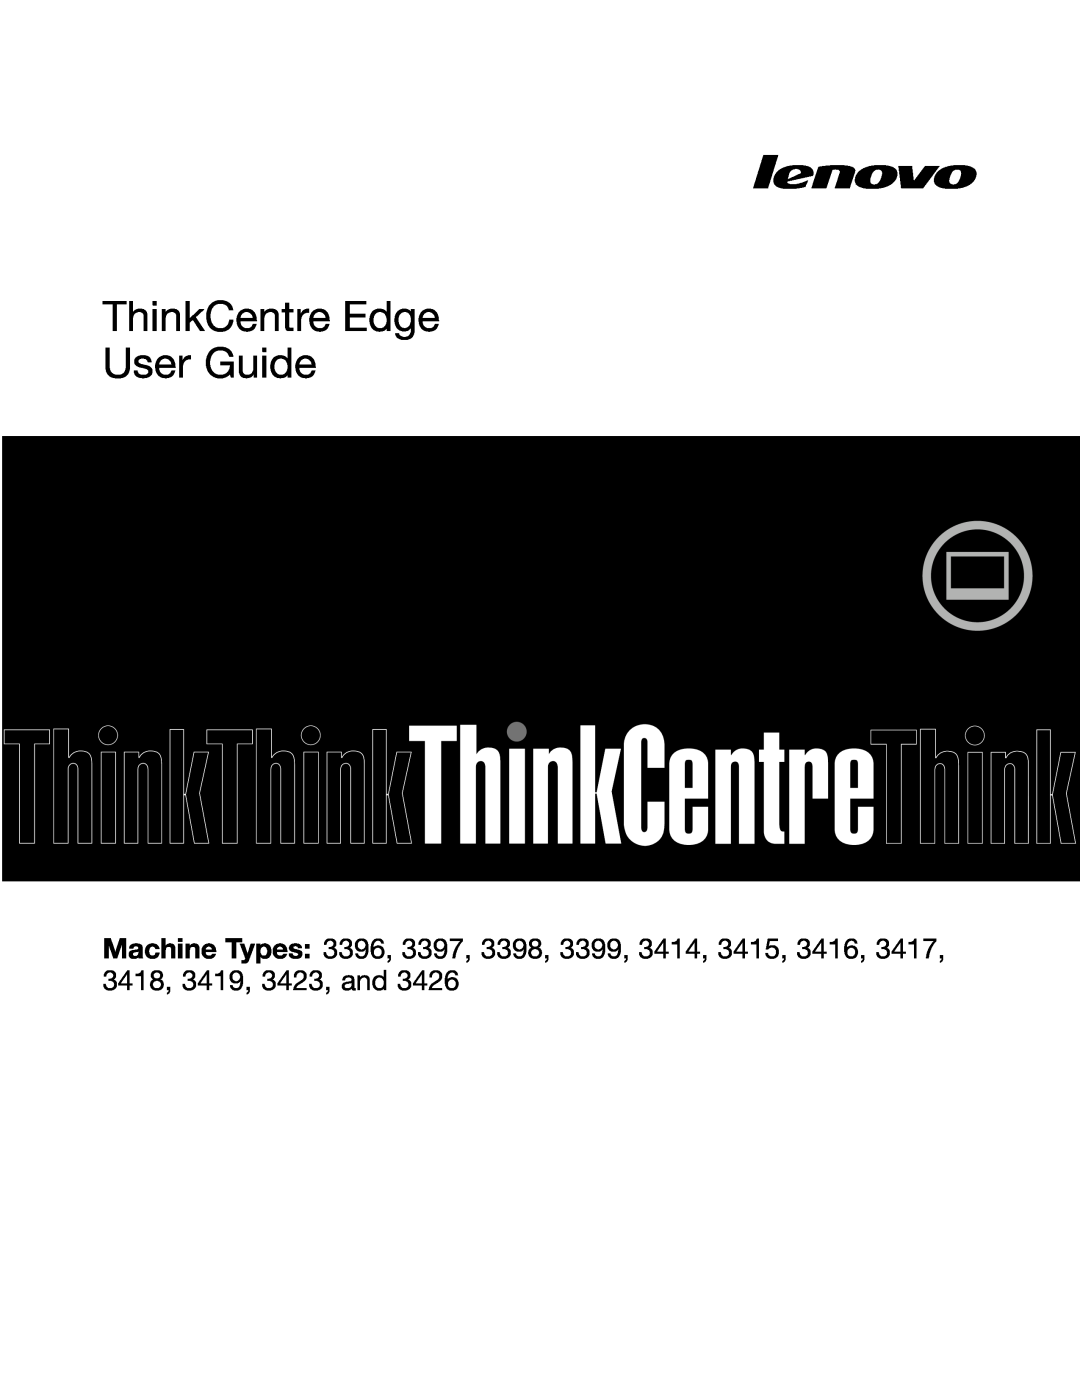 Lenovo 3397, 3398, 3399, 3414, 3396, 3416, 3426, 3415, 3423, 3418, 3417, 3419 manual ThinkCentre Edge User Guide 